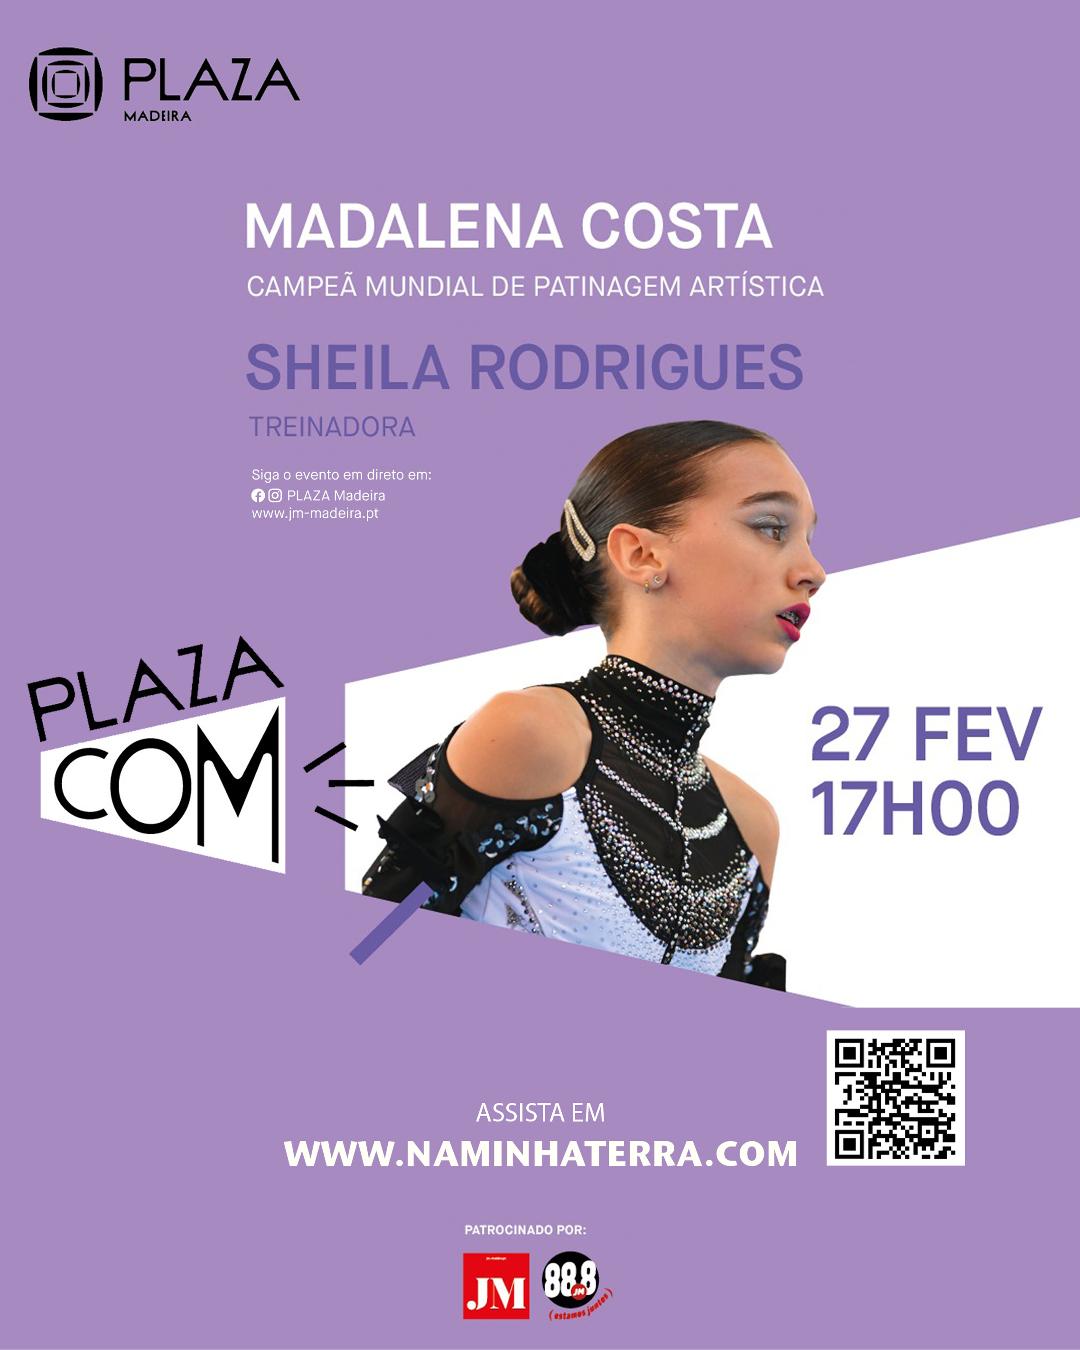 PLAZA COM | MADALENA COSTA